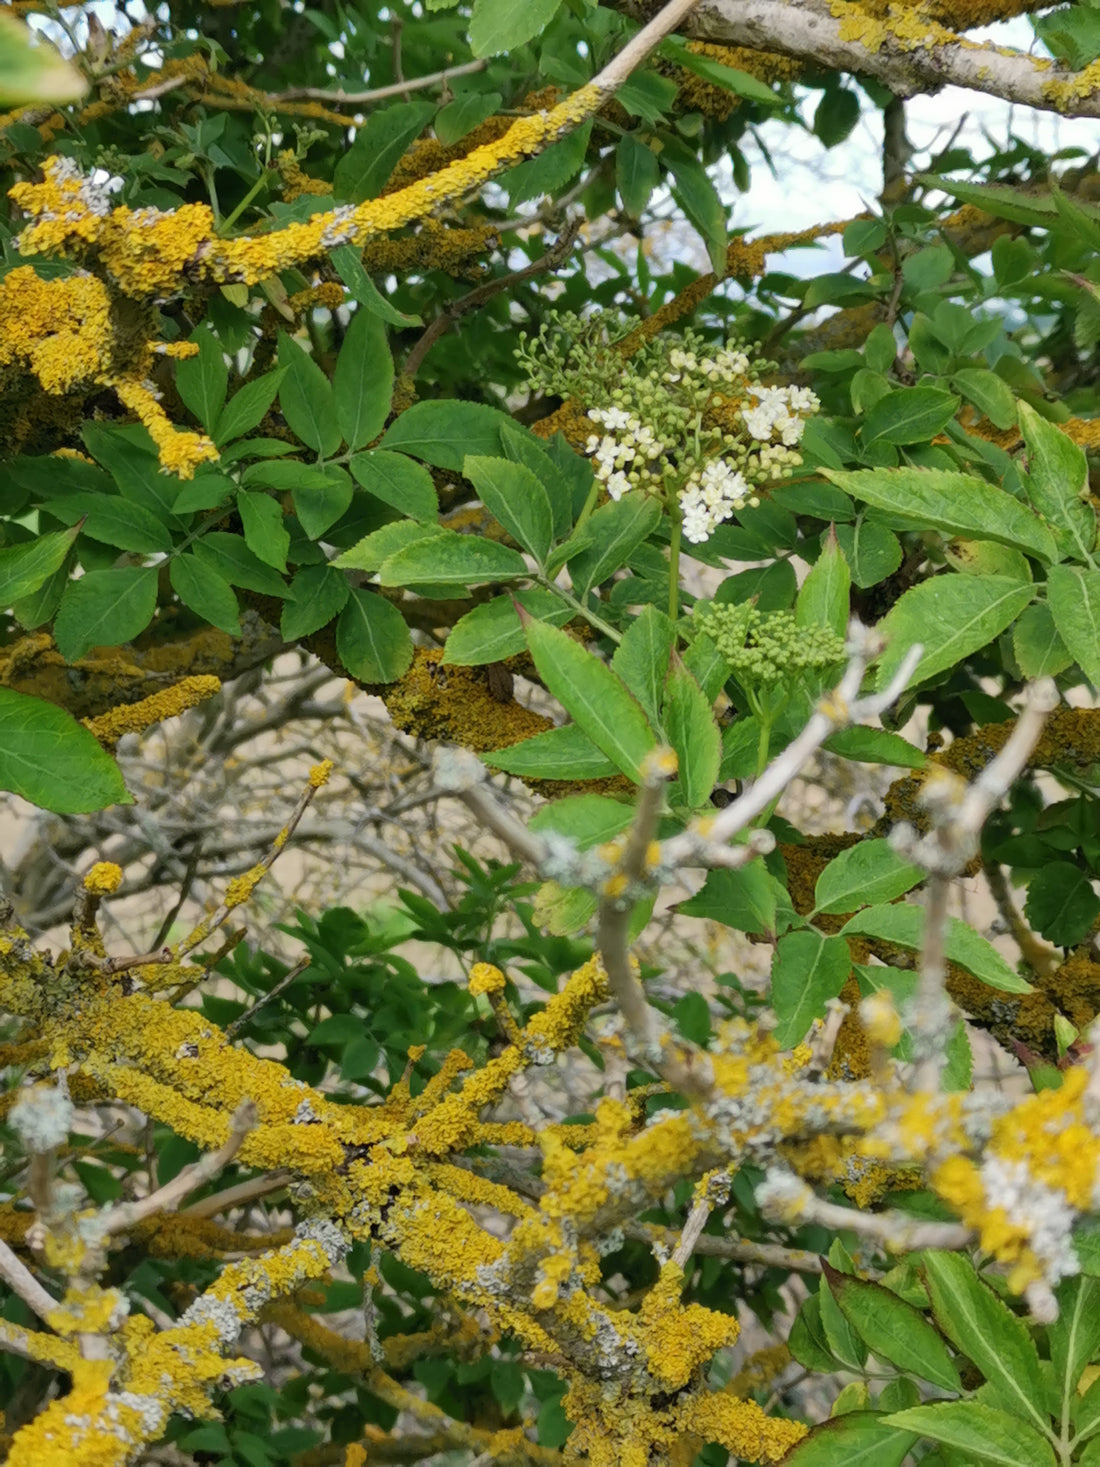 SilkGenie Elderflower foraging - homemade cordial